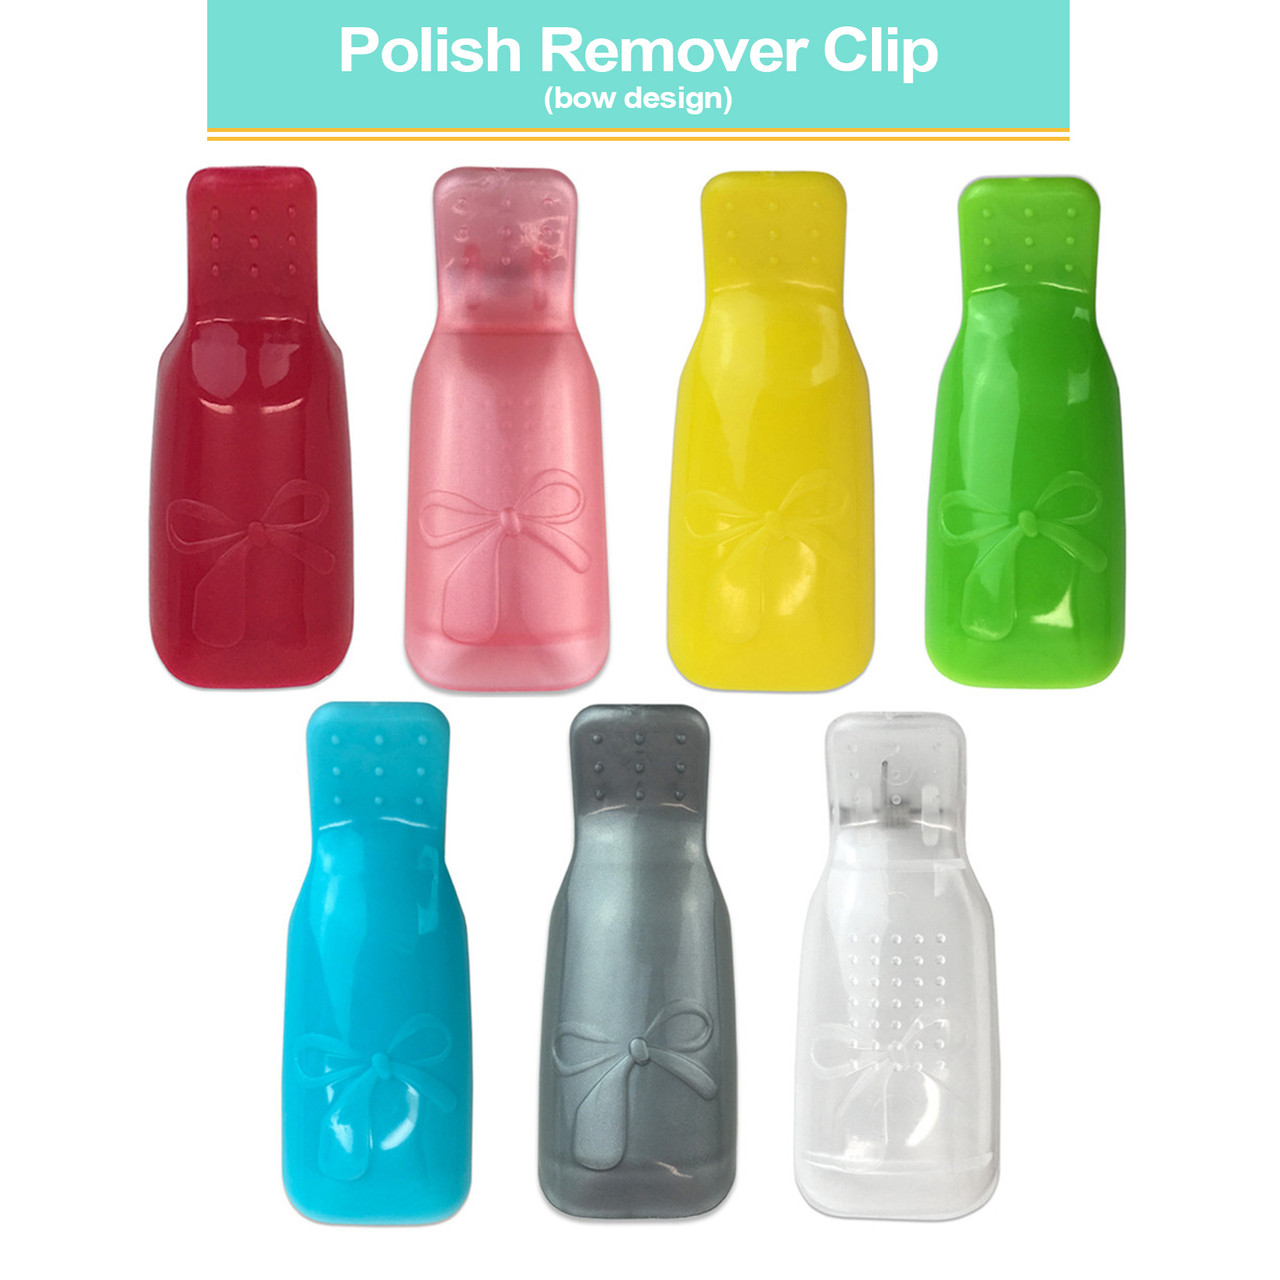 Reusable Polish Remover Clip (Bow Design)